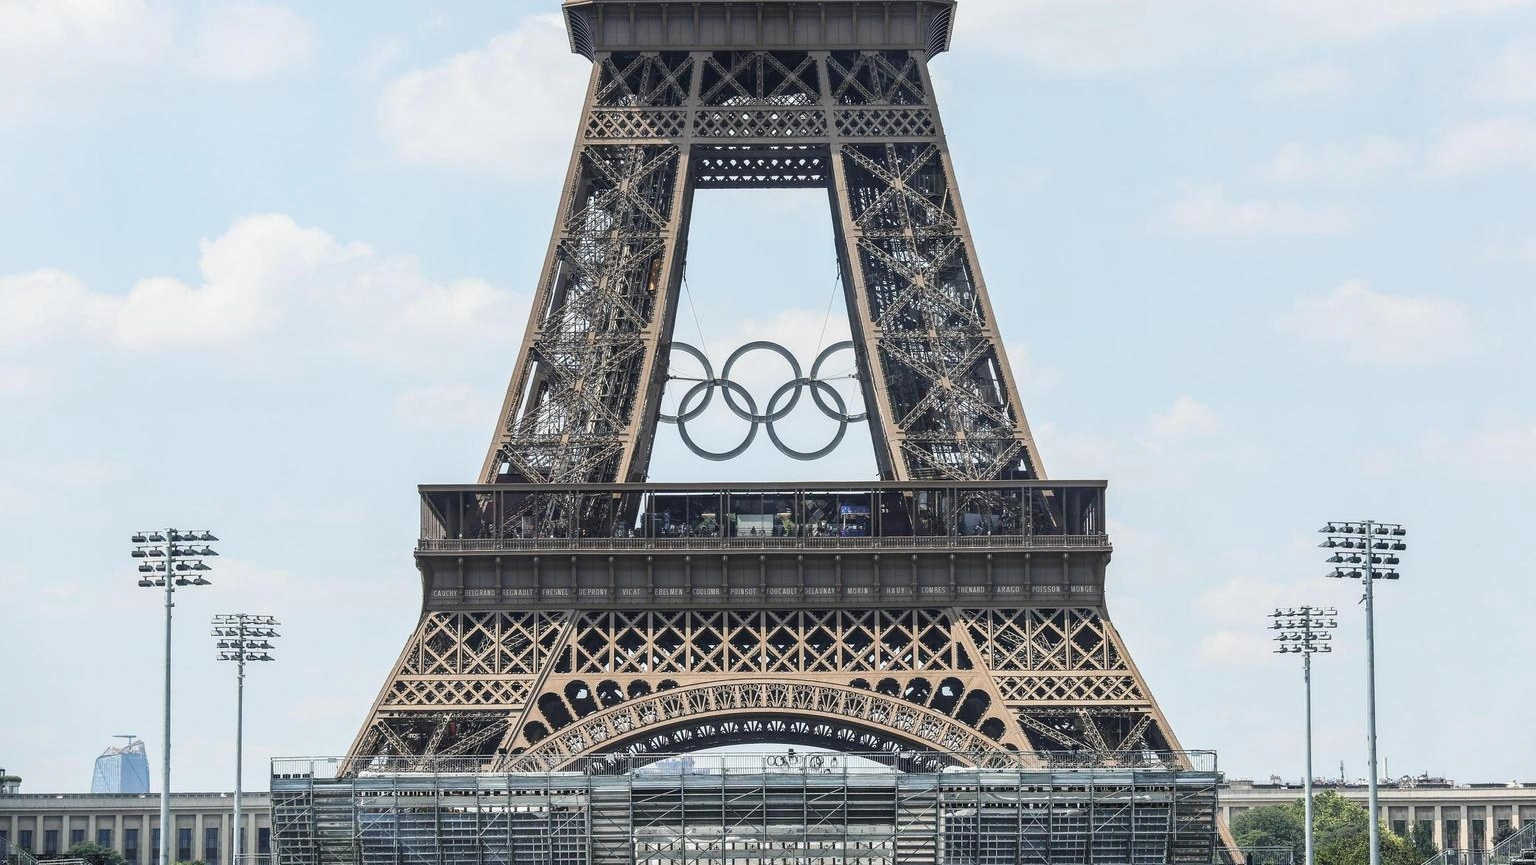 La torre Eiffel, simbolo della città di Parigi, insieme al simbolo delle Olimpiadi